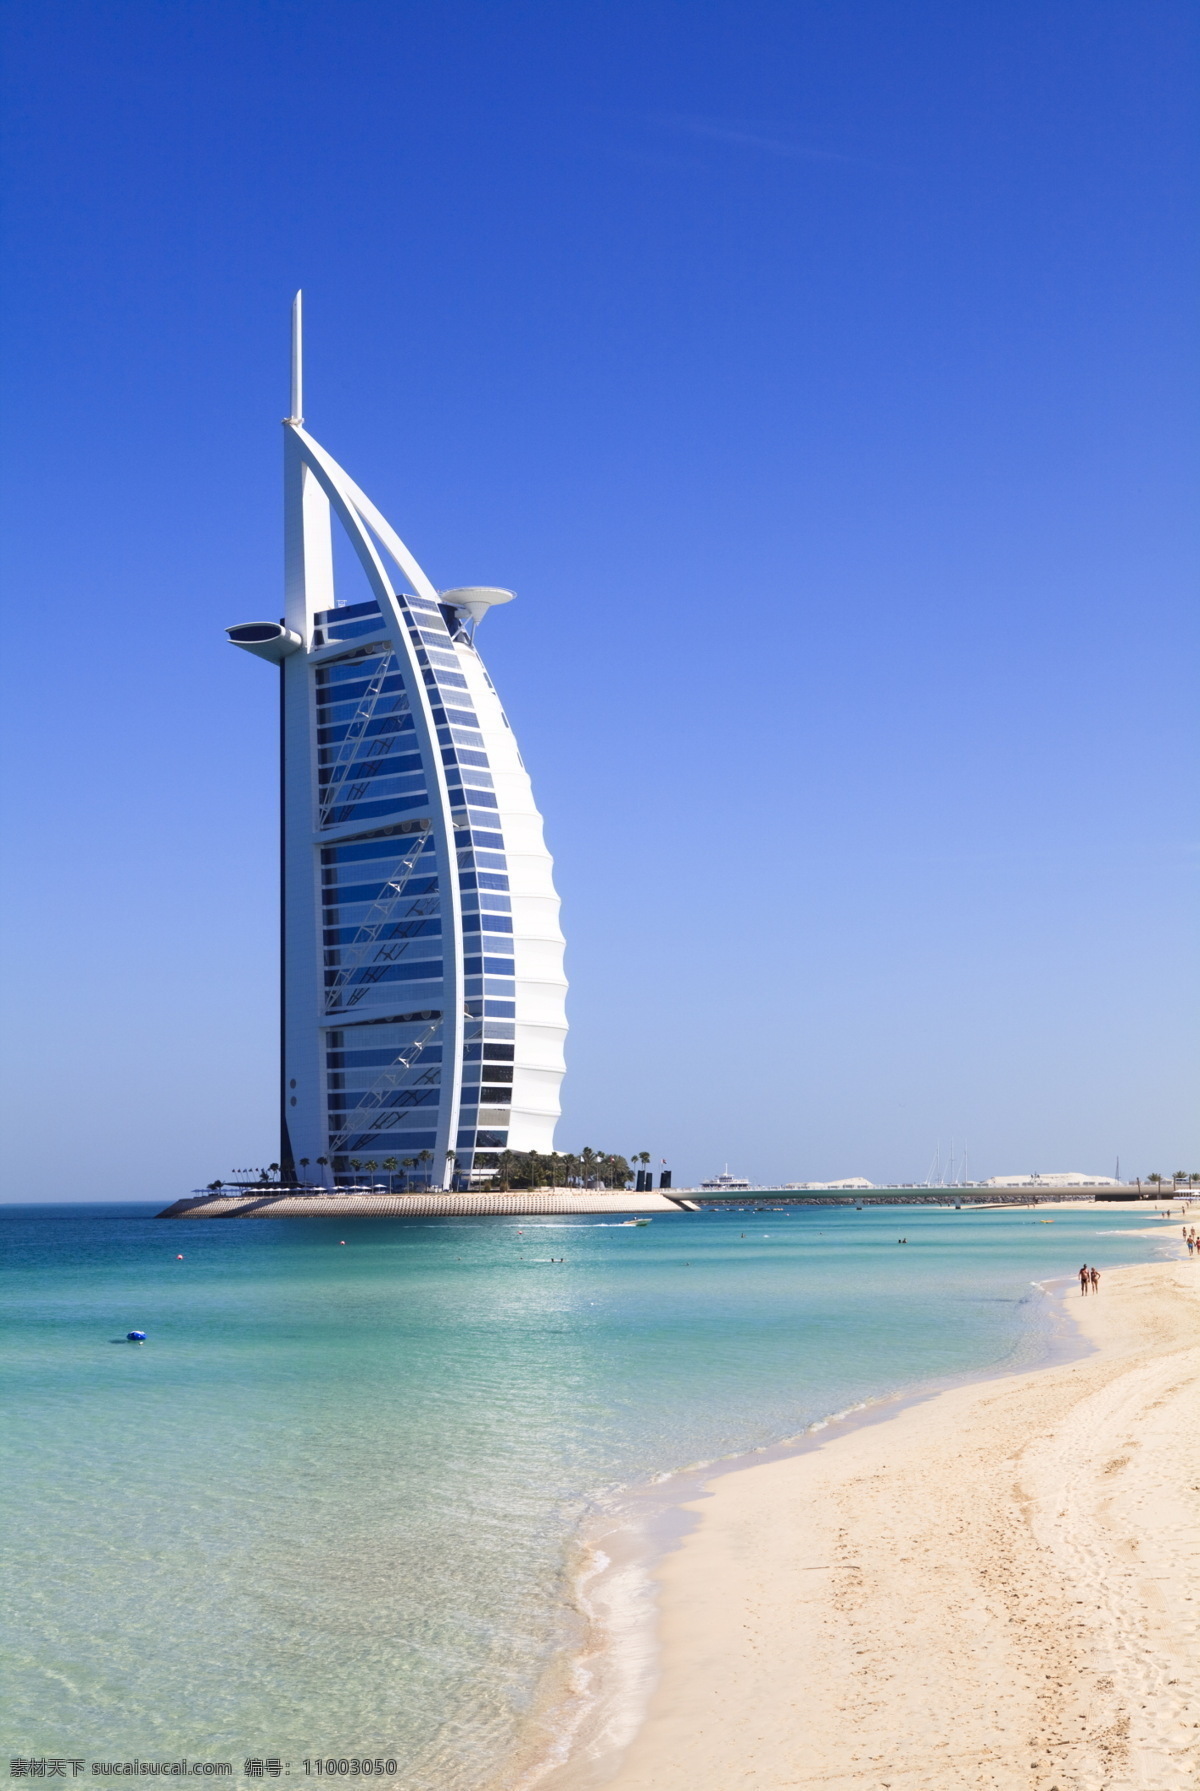 迪拜 酒店 帆船 大海 沙滩 旅游 国外旅游 旅游摄影